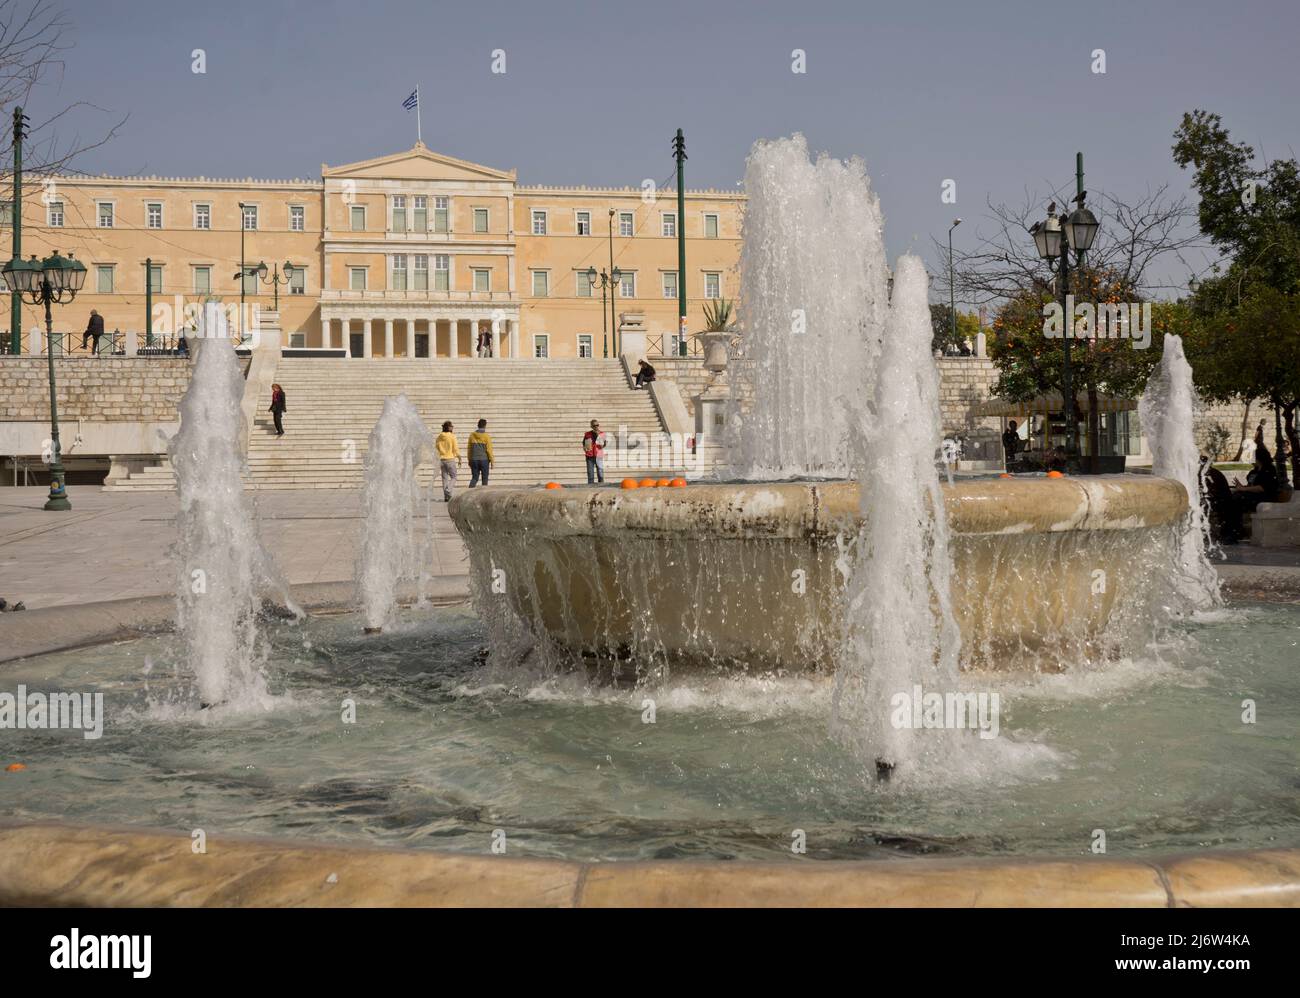 Touristes et visiteurs à la place Syntagma près de l'ancien Palais Royal, abritant le Parlement grec depuis 1934, Athènes, Grèce, Europe Banque D'Images